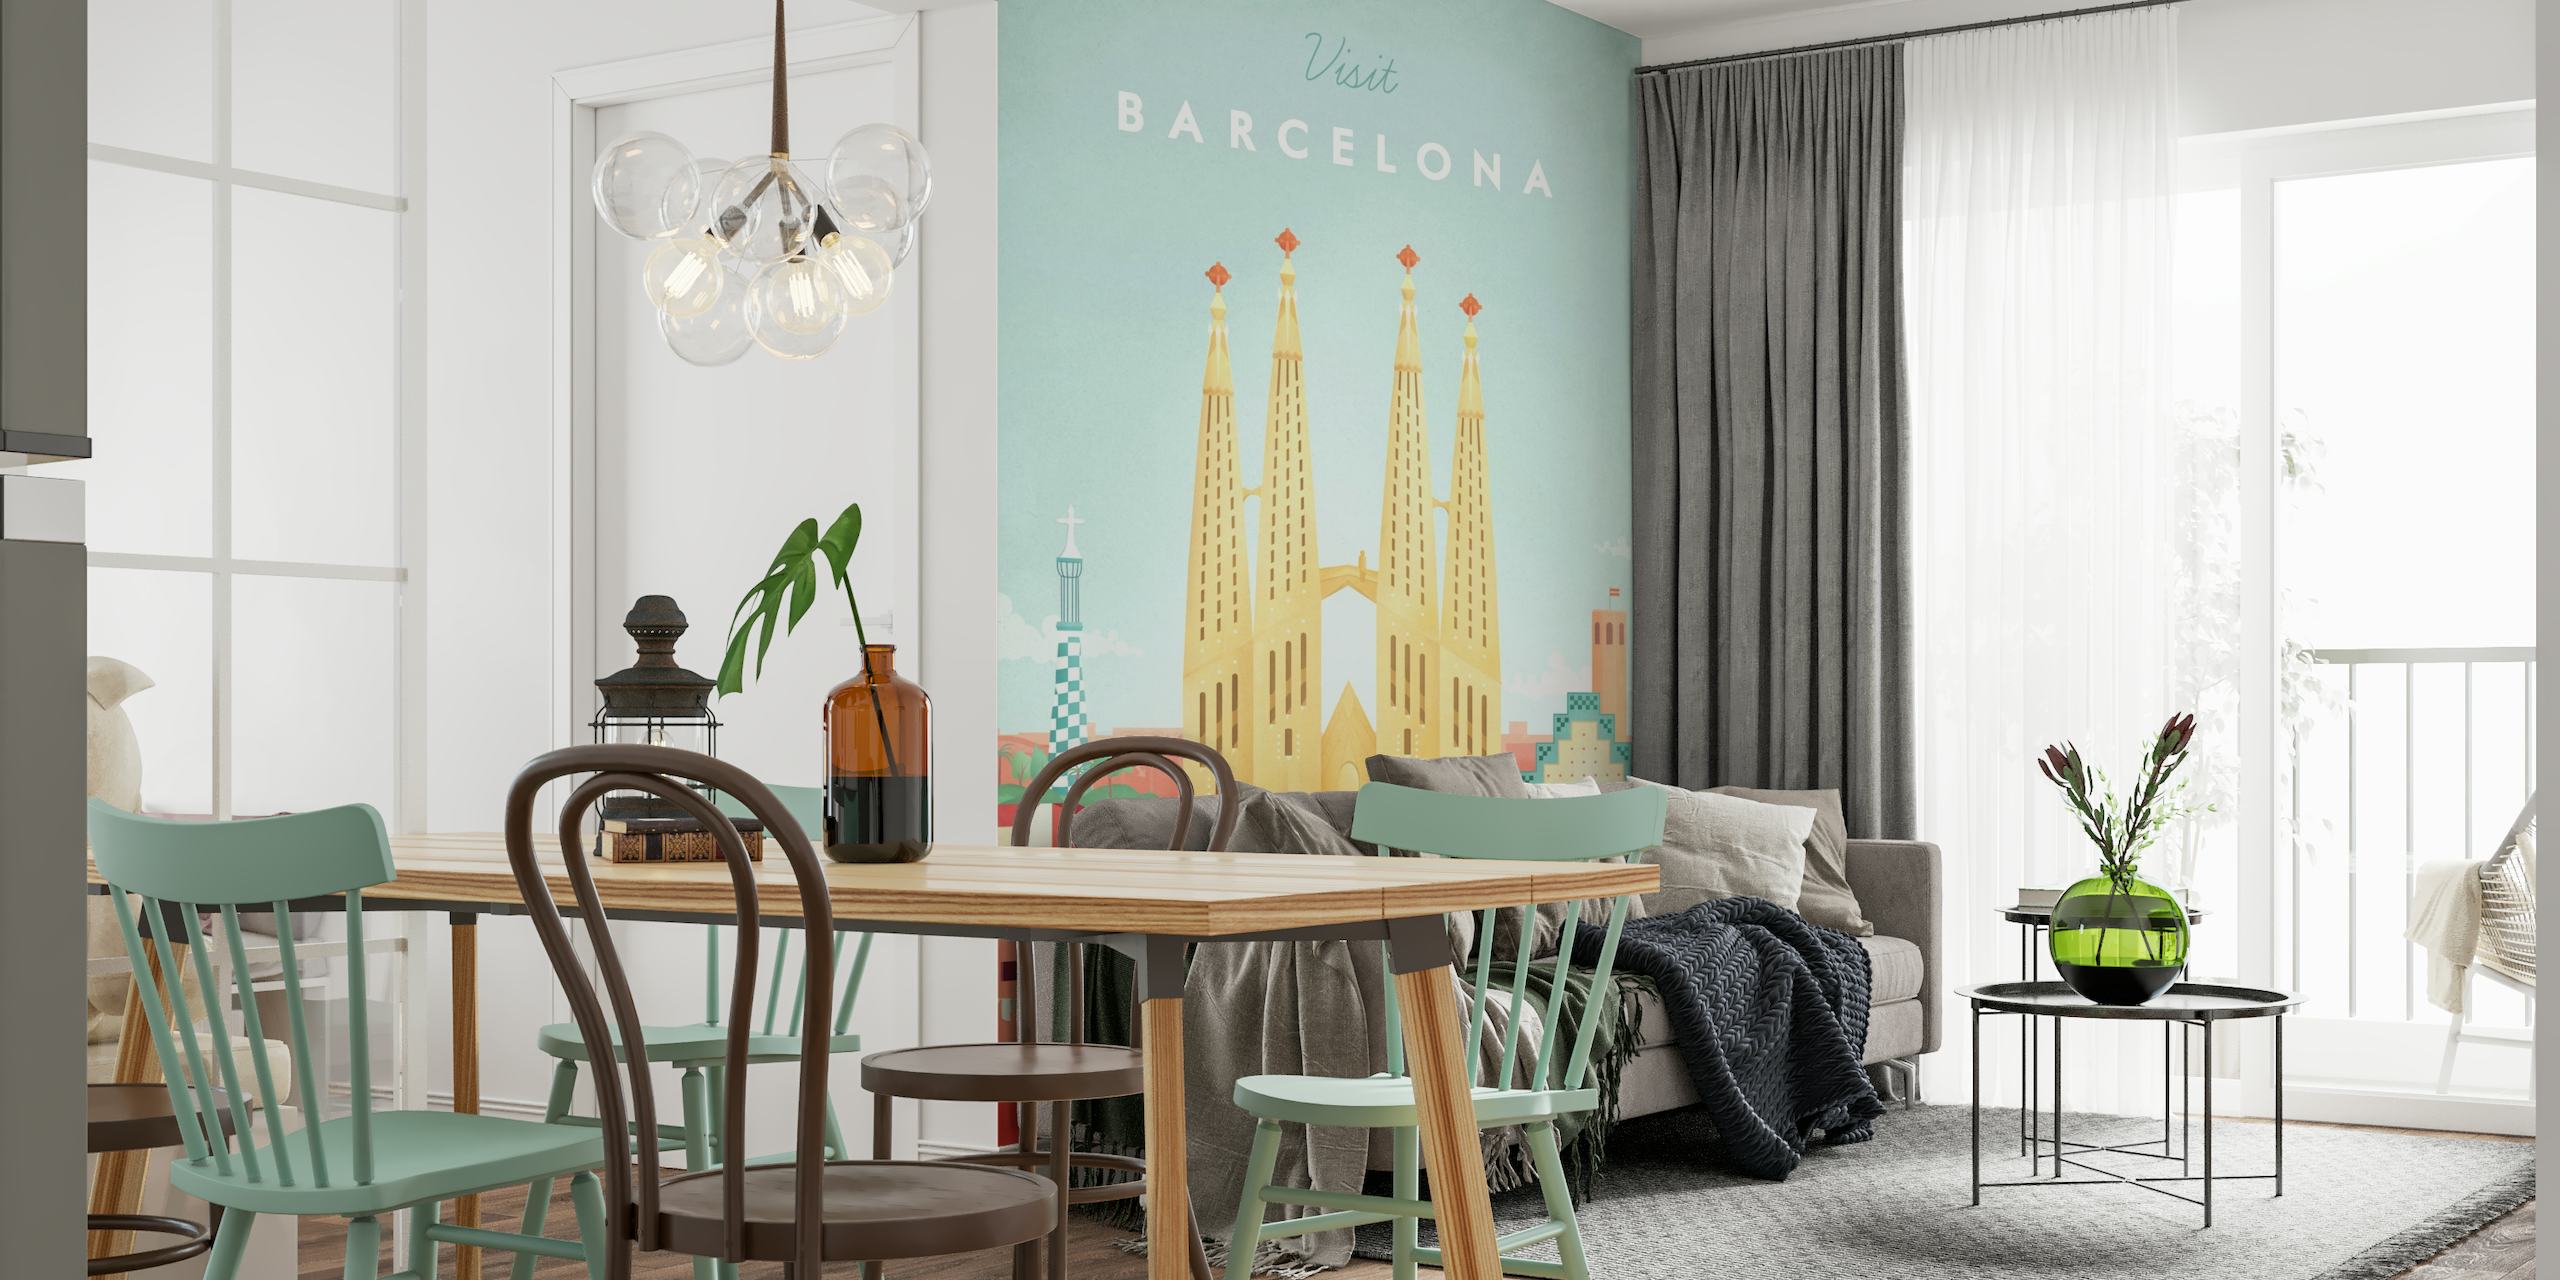 Barcelona Travel Poster tapetit